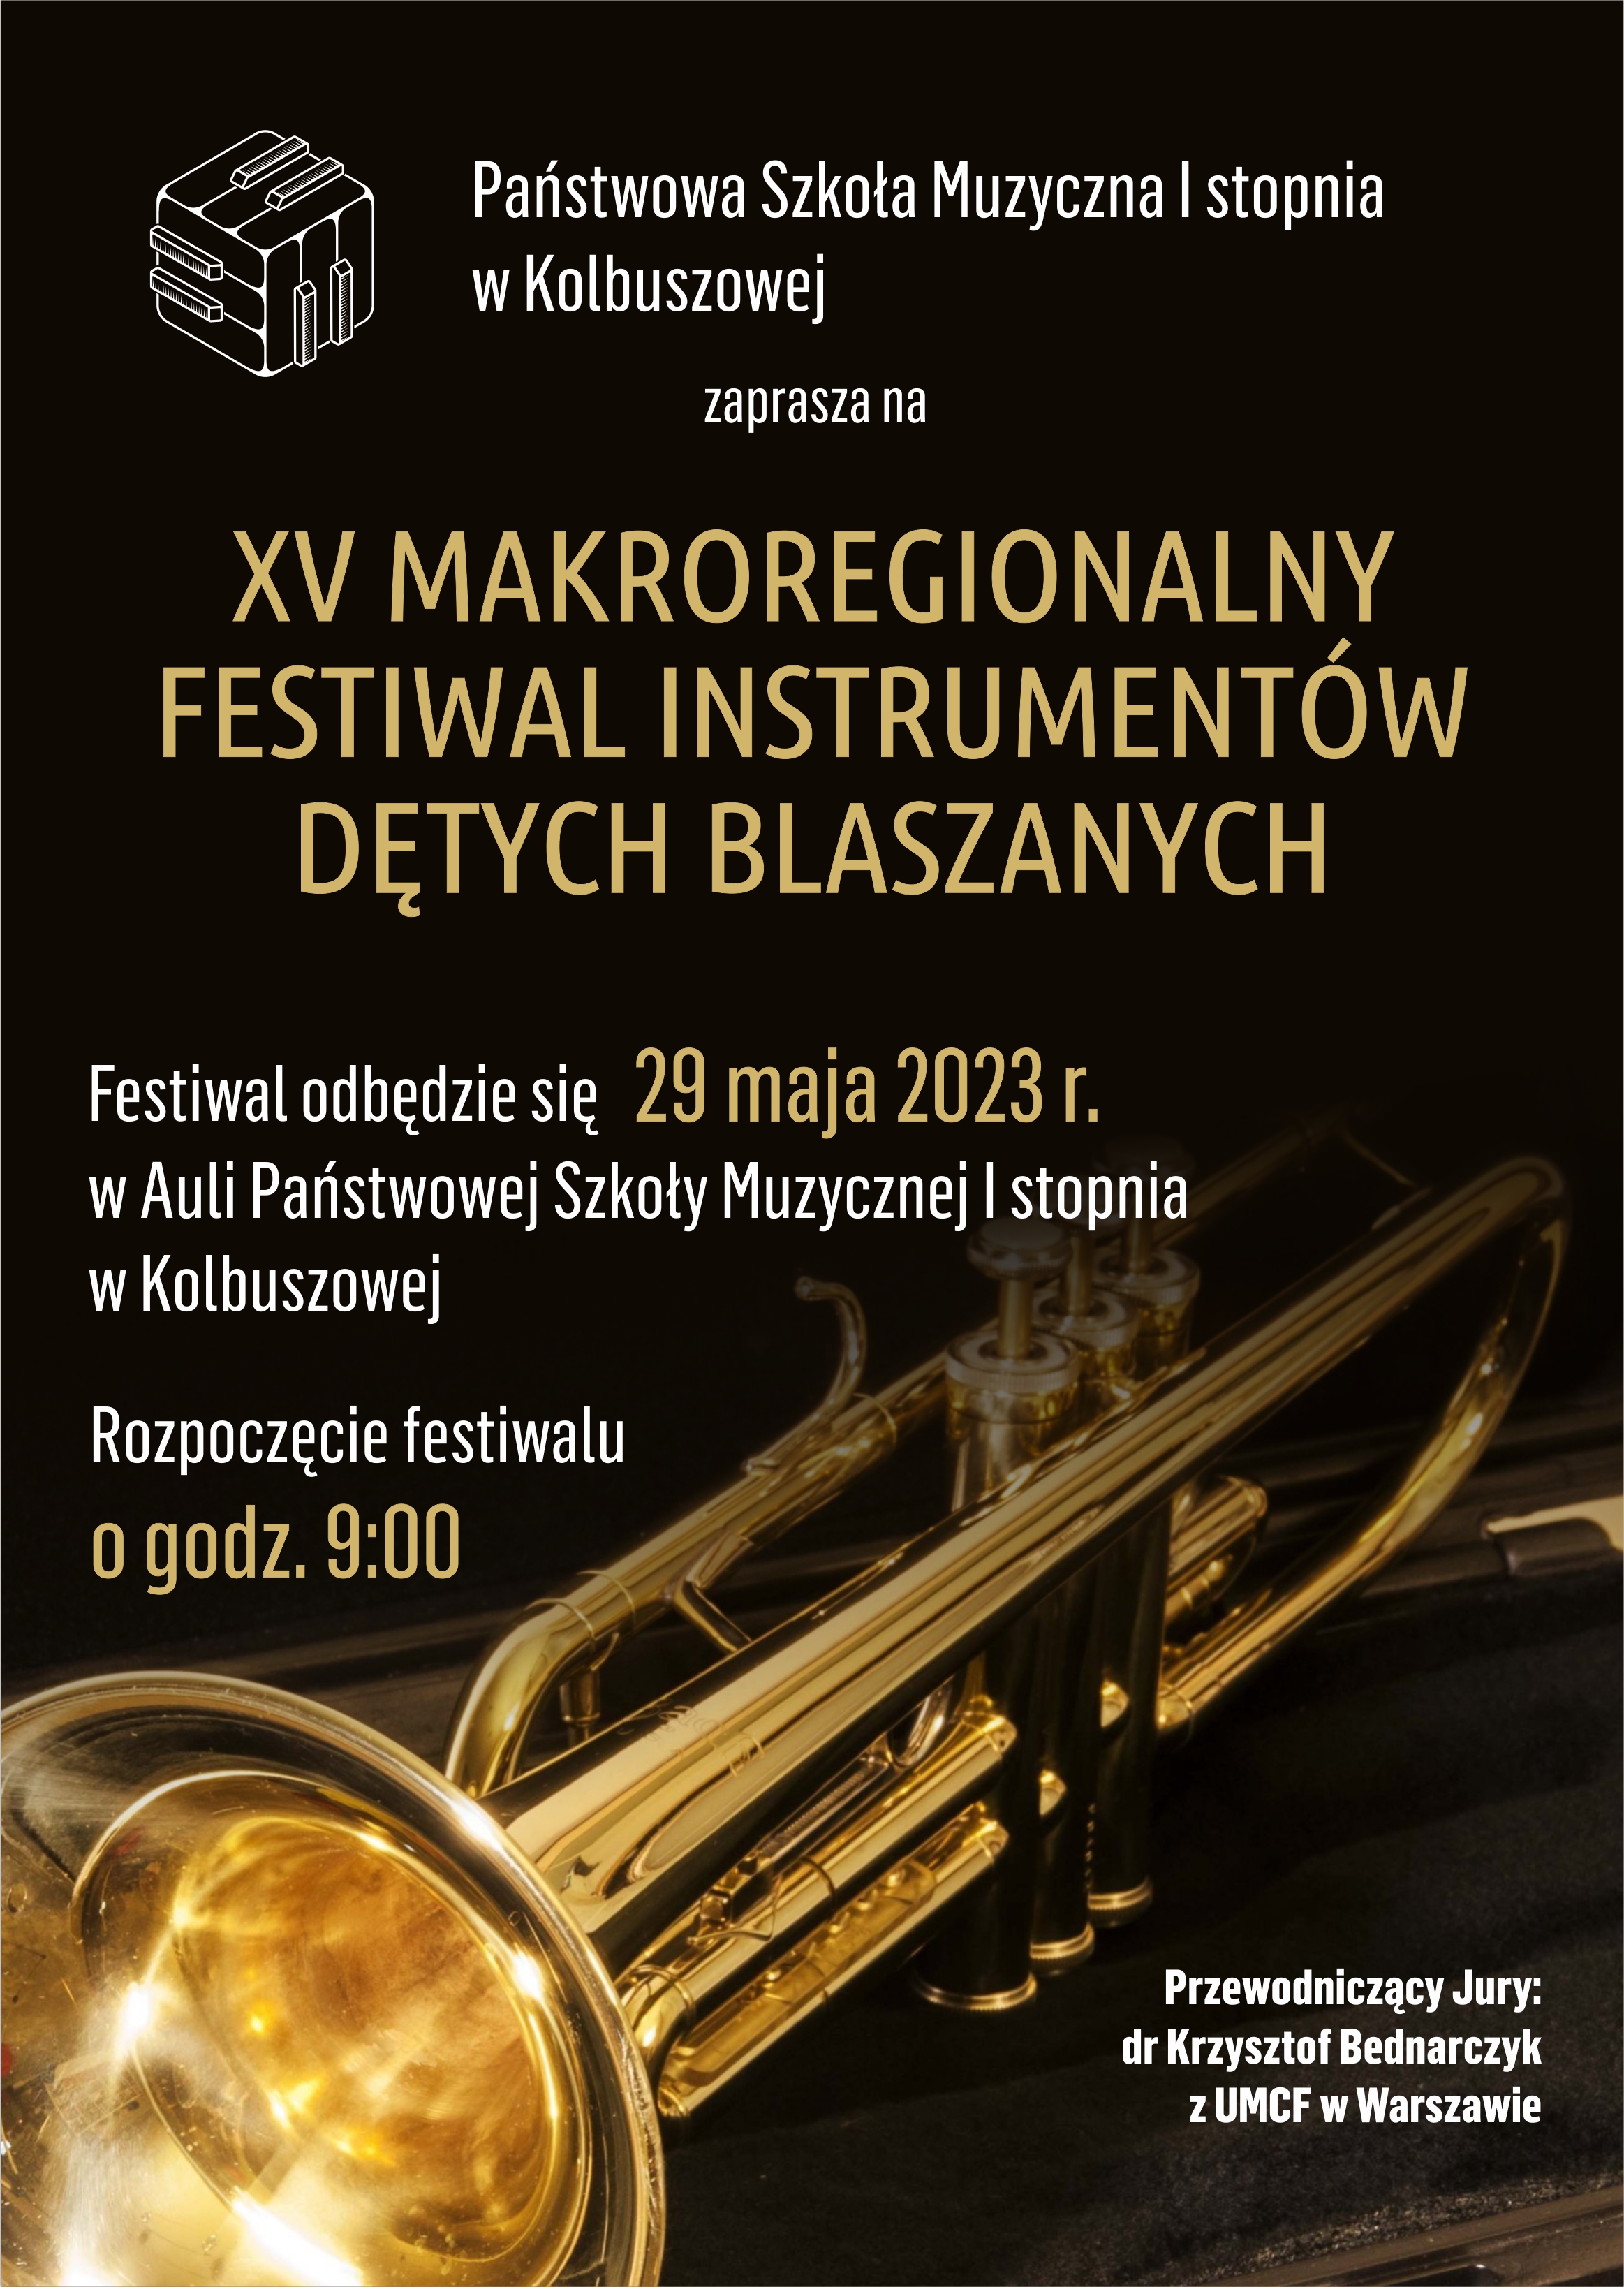 XV Festiwal Instrumentów Dętych Blaszanych